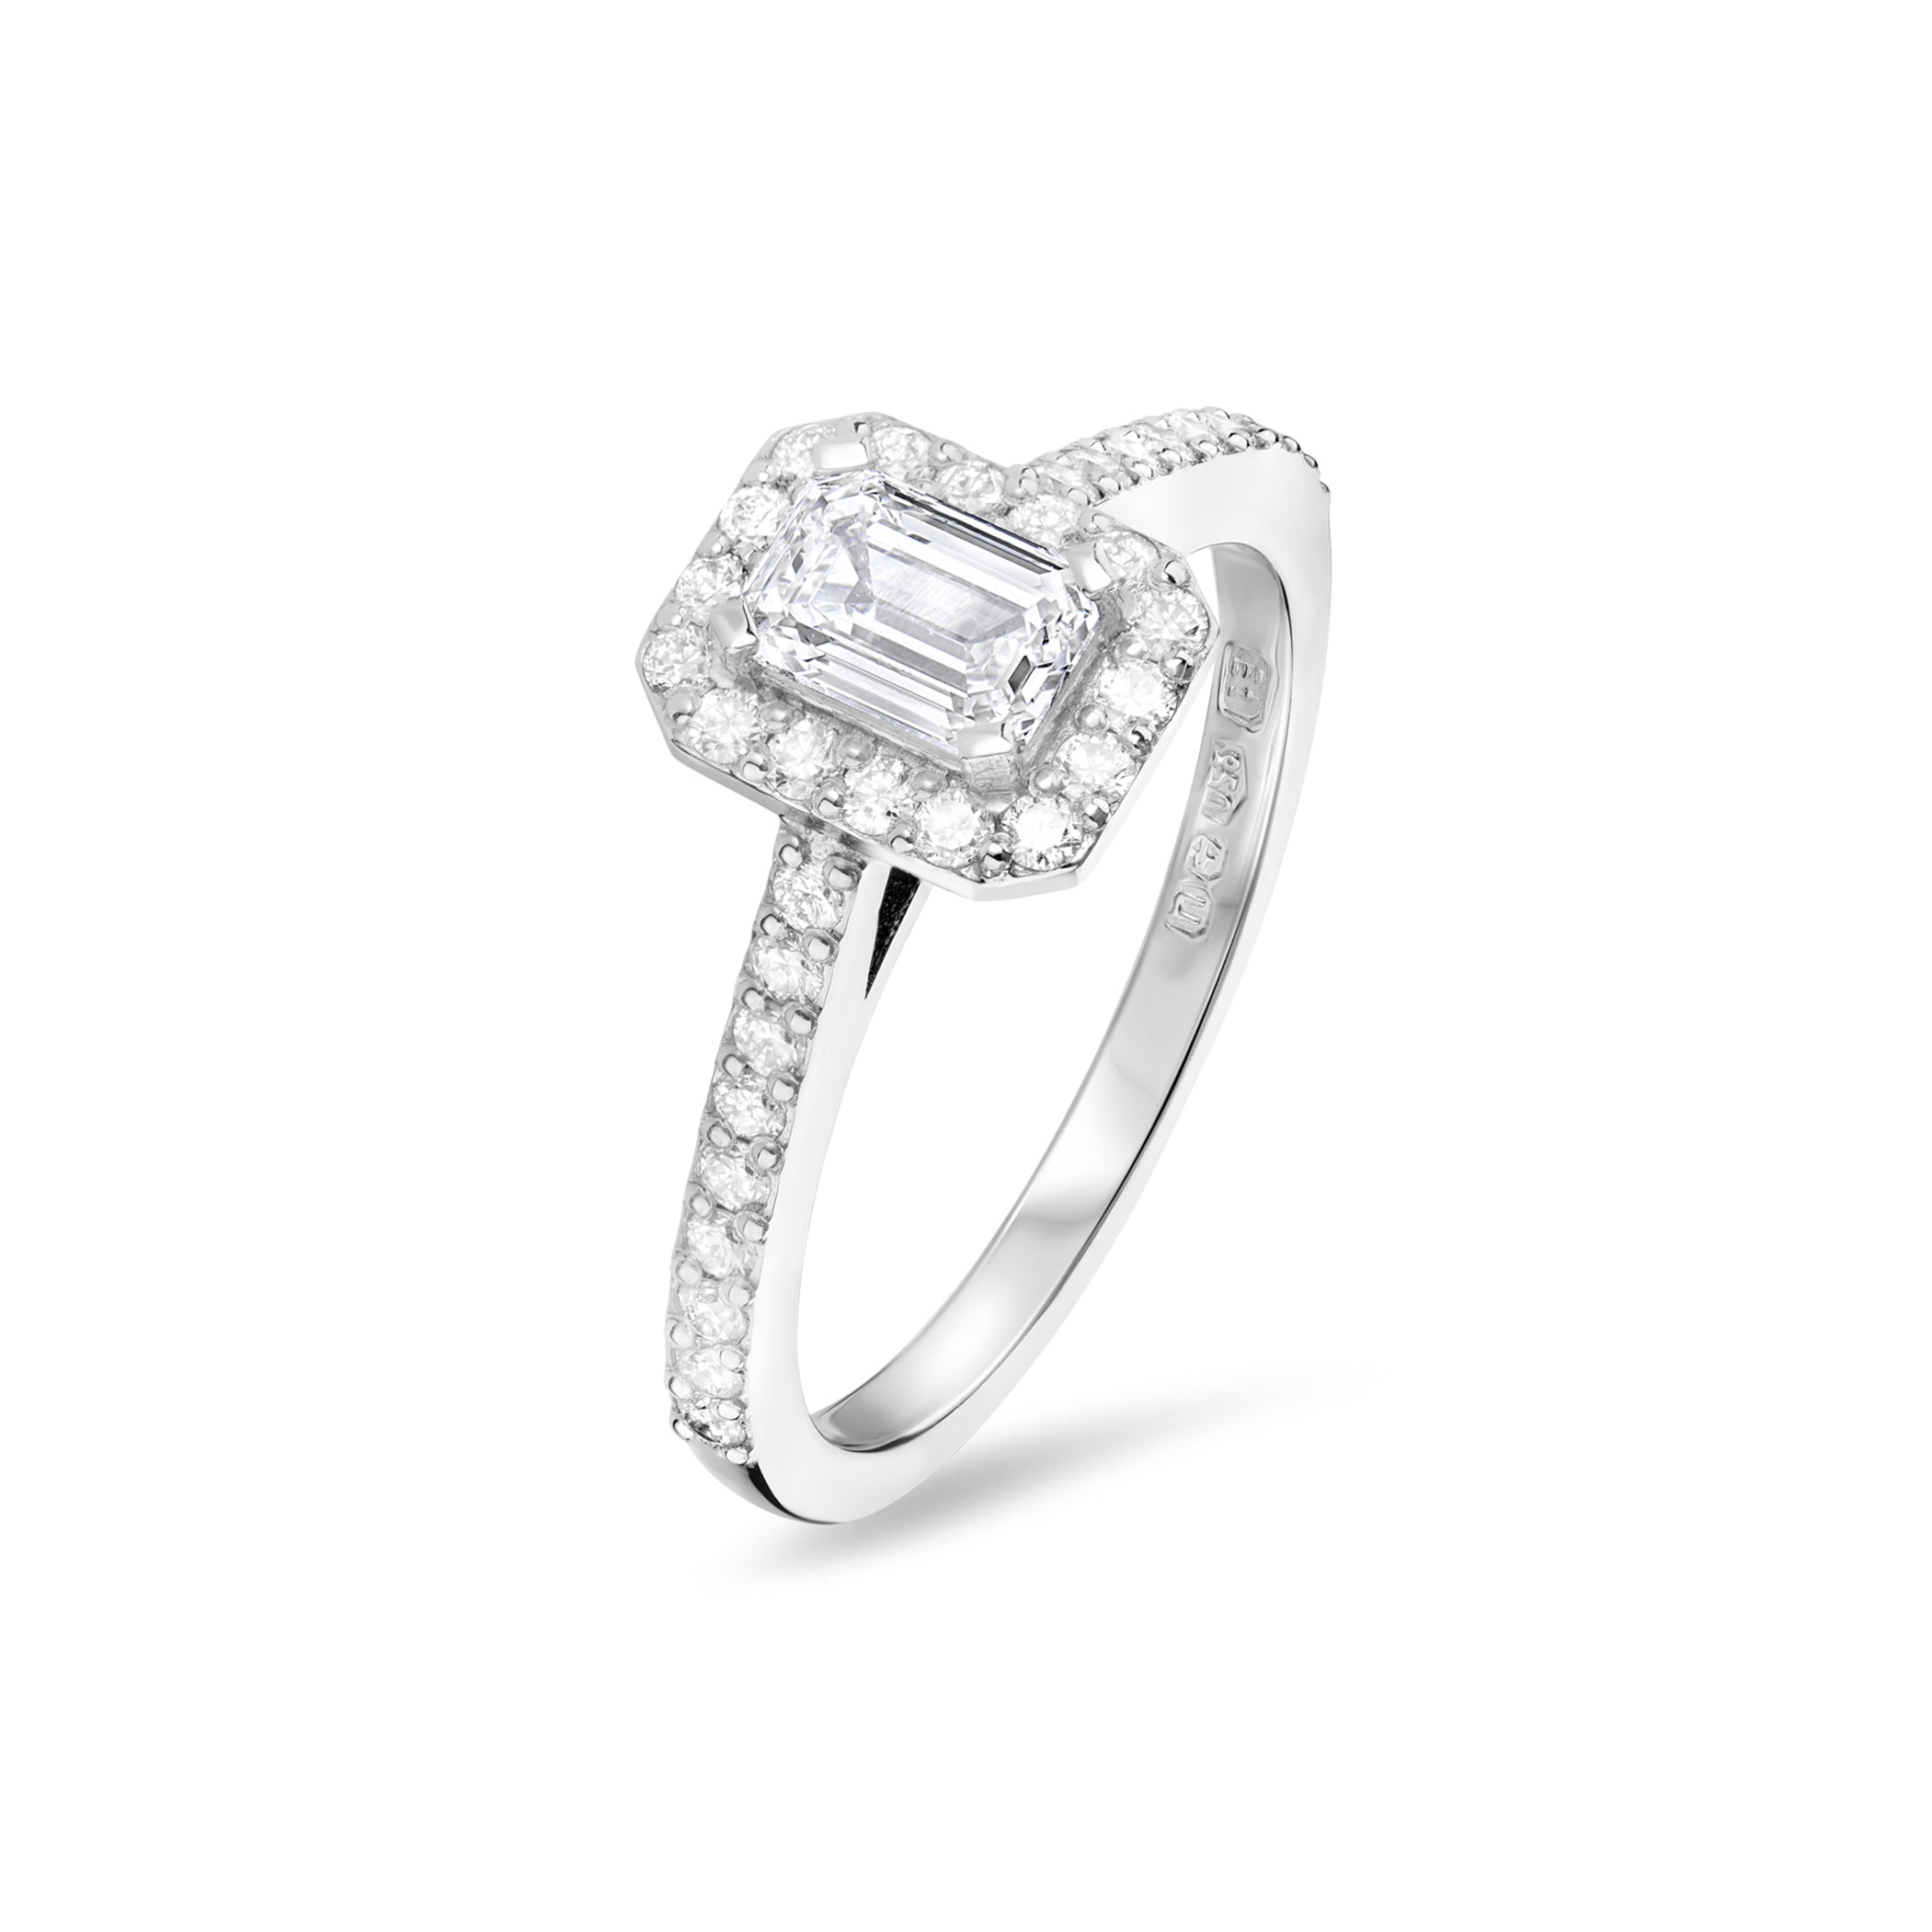 Emerald Cut Diamond Halo Engagement Ring in Platinum